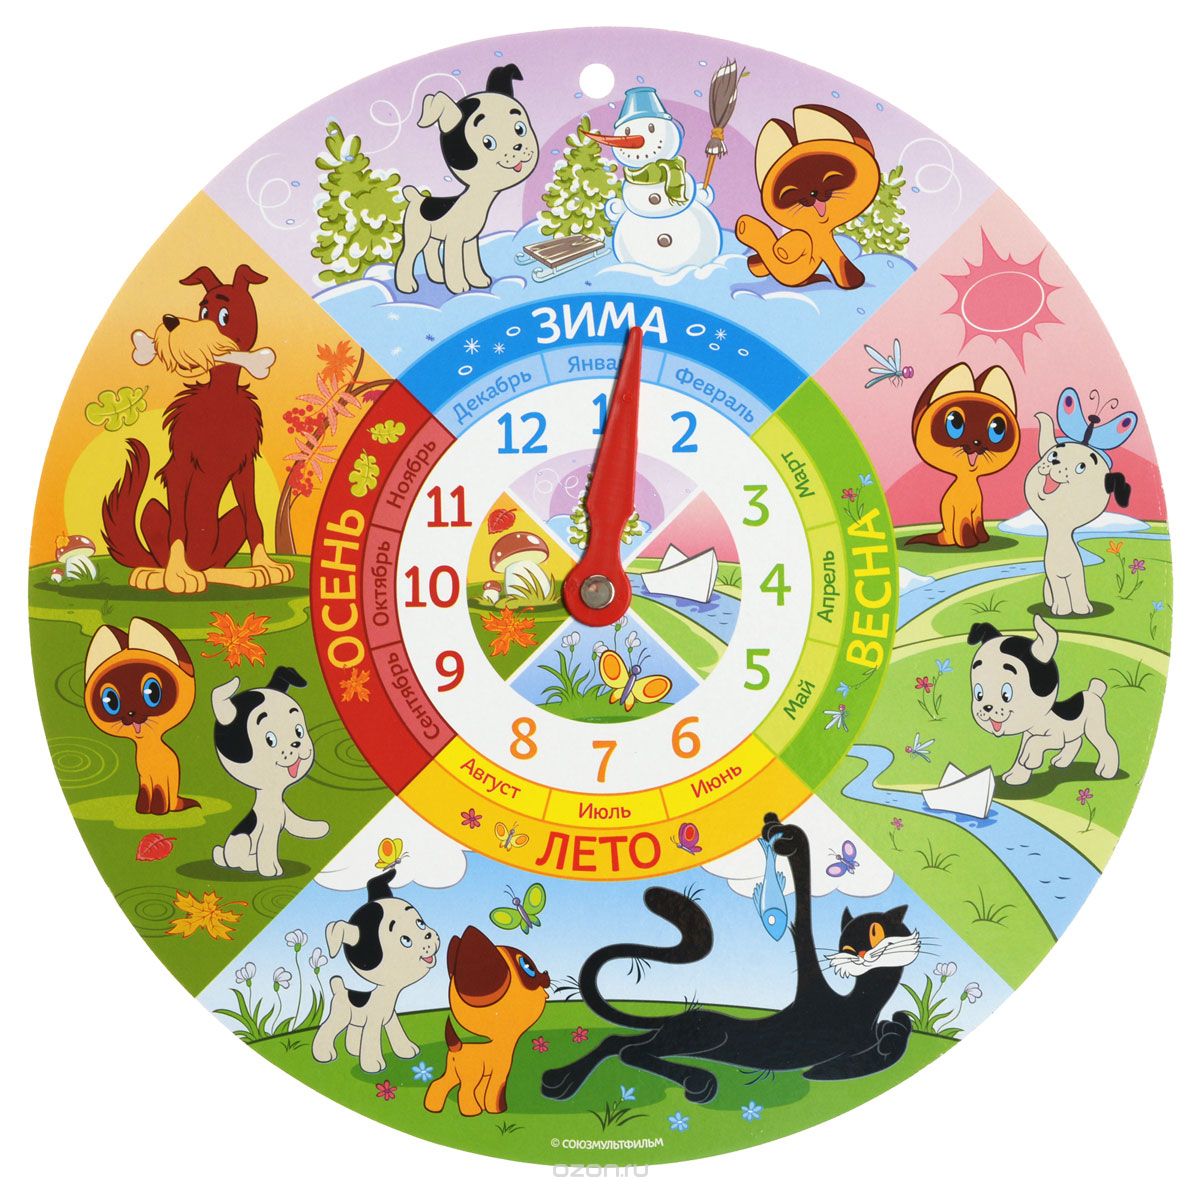 Календарь круглый год. Часы времена года. Модель года для дошкольников. Изображения времен года для детей. Часы времена года для детей.